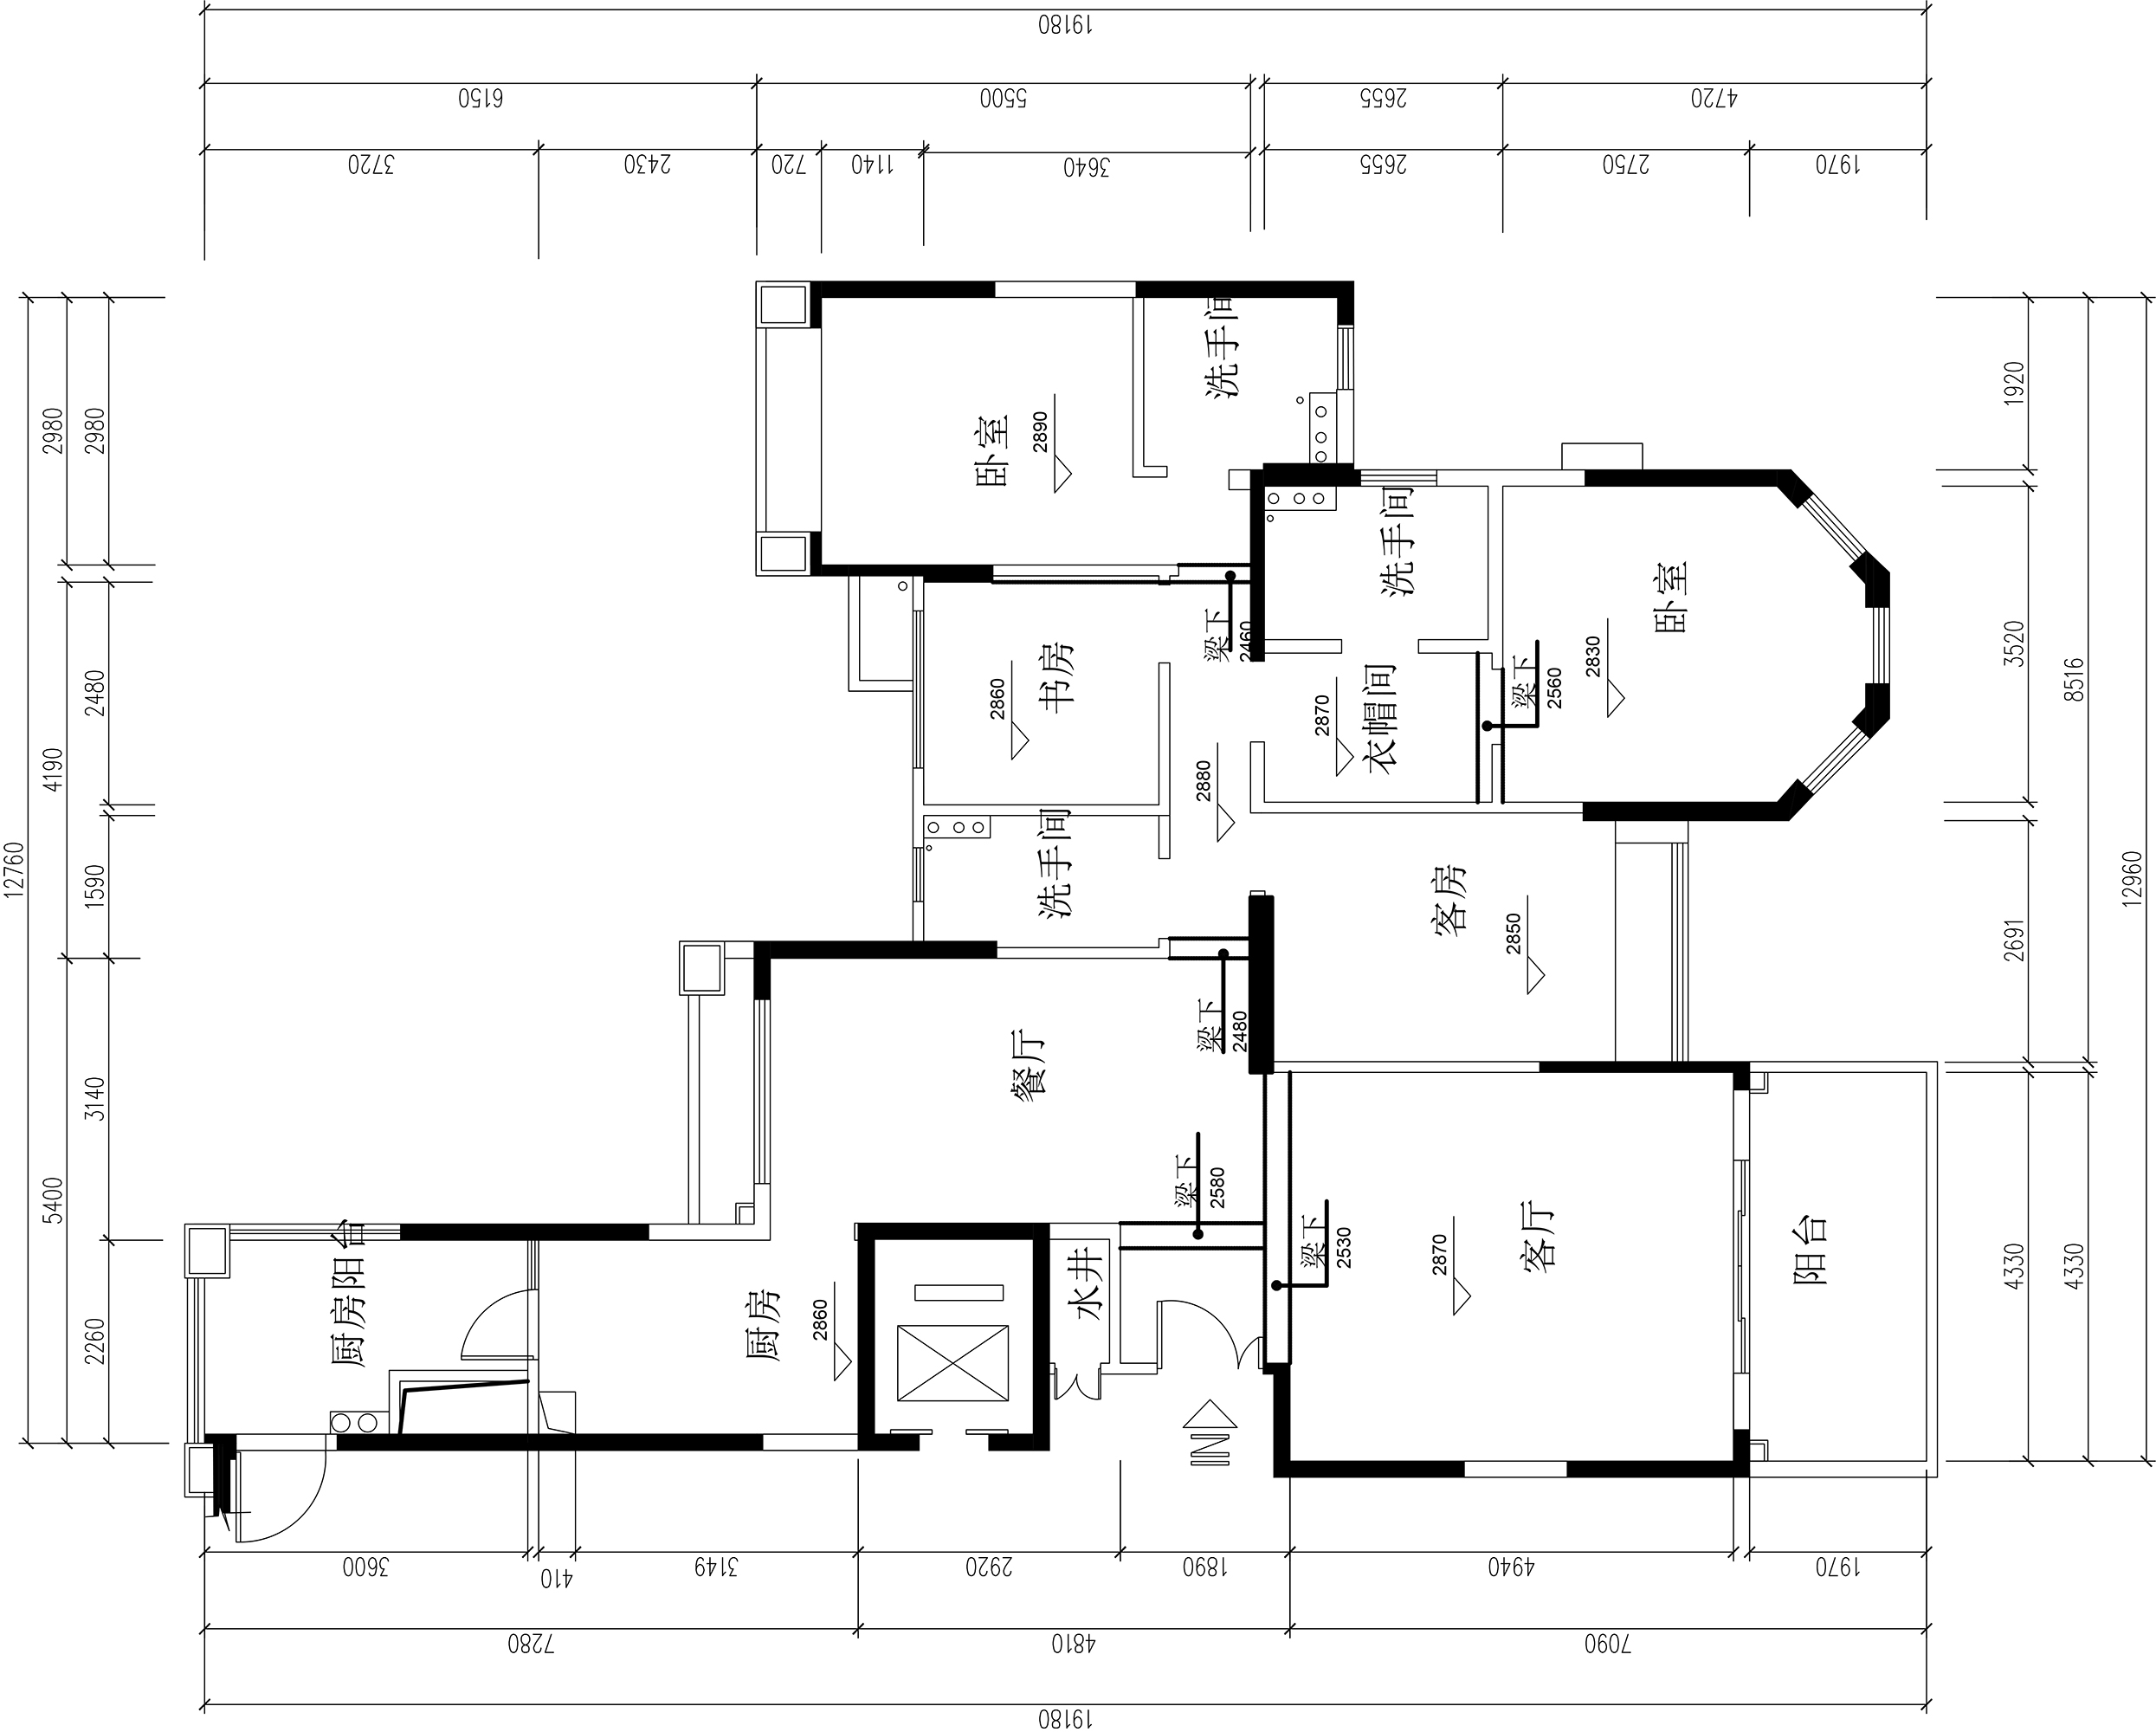 室内平面规划设计选评第四期原始图JPG版